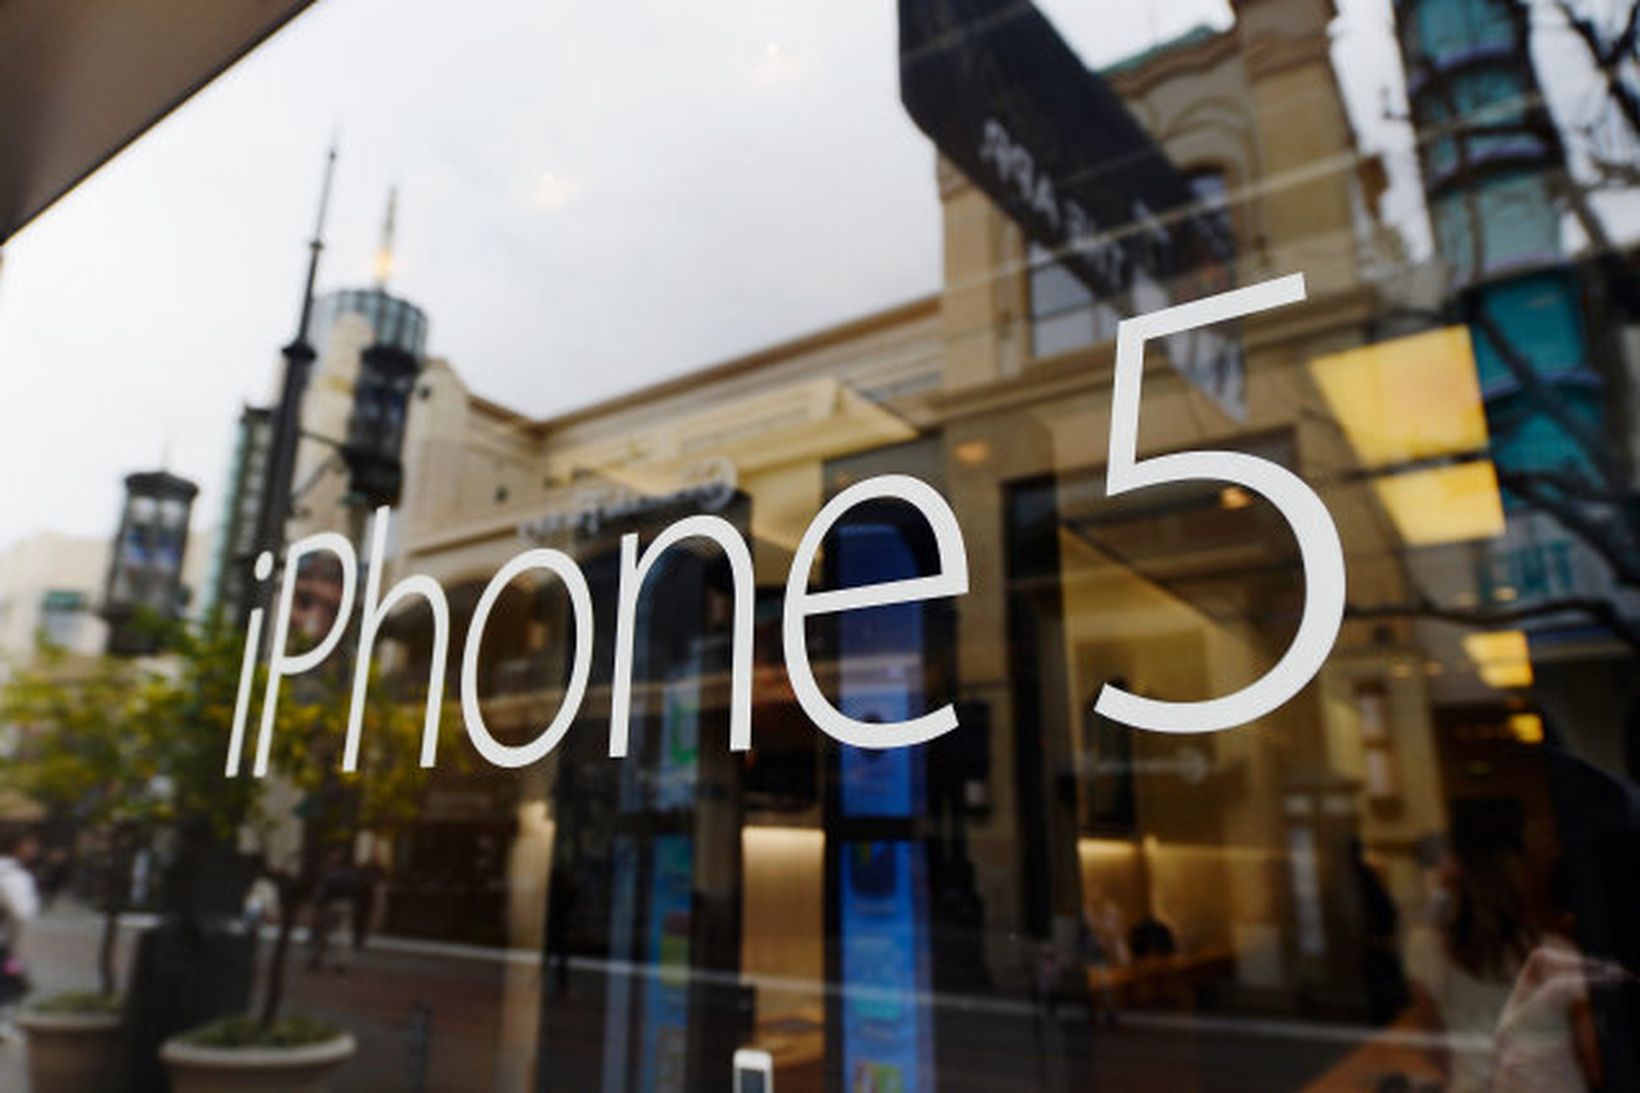 iPhone 5 er nýjasti snjallsími Apple